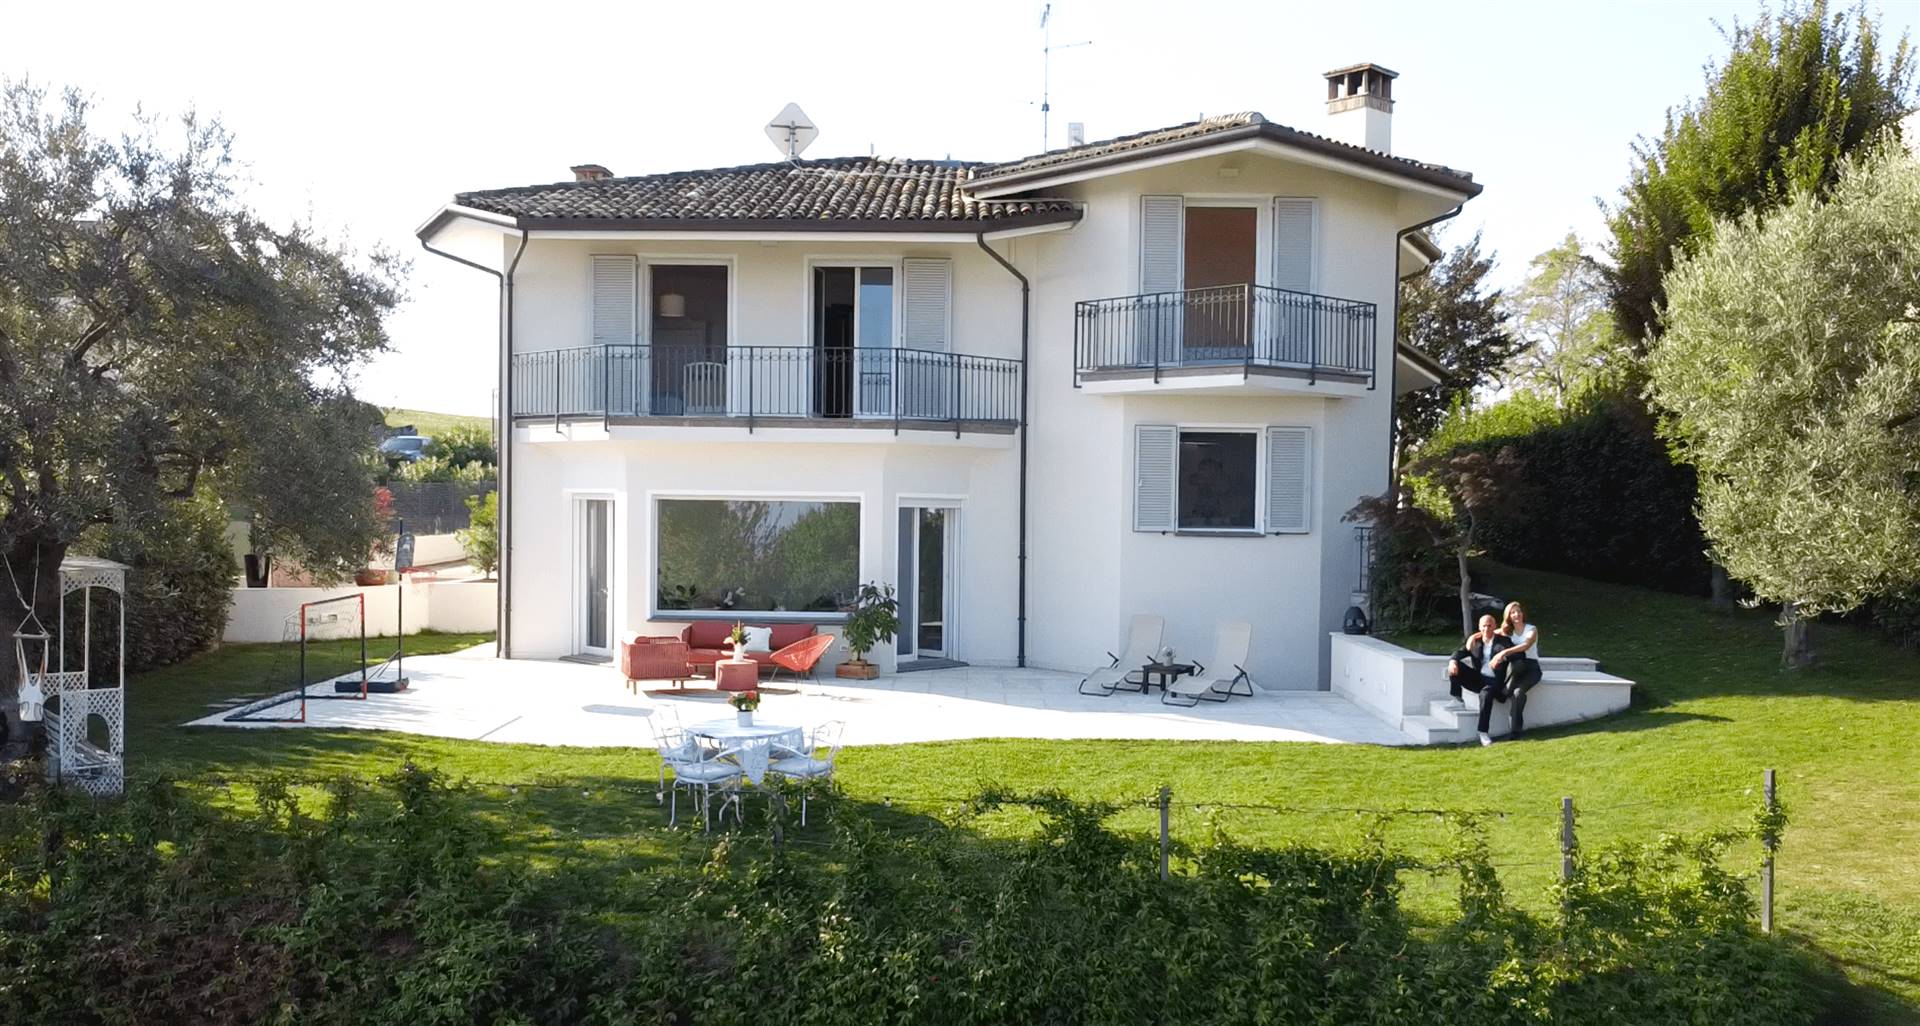 Villa in vendita a Longiano, 10 locali, Trattative riservate | CambioCasa.it